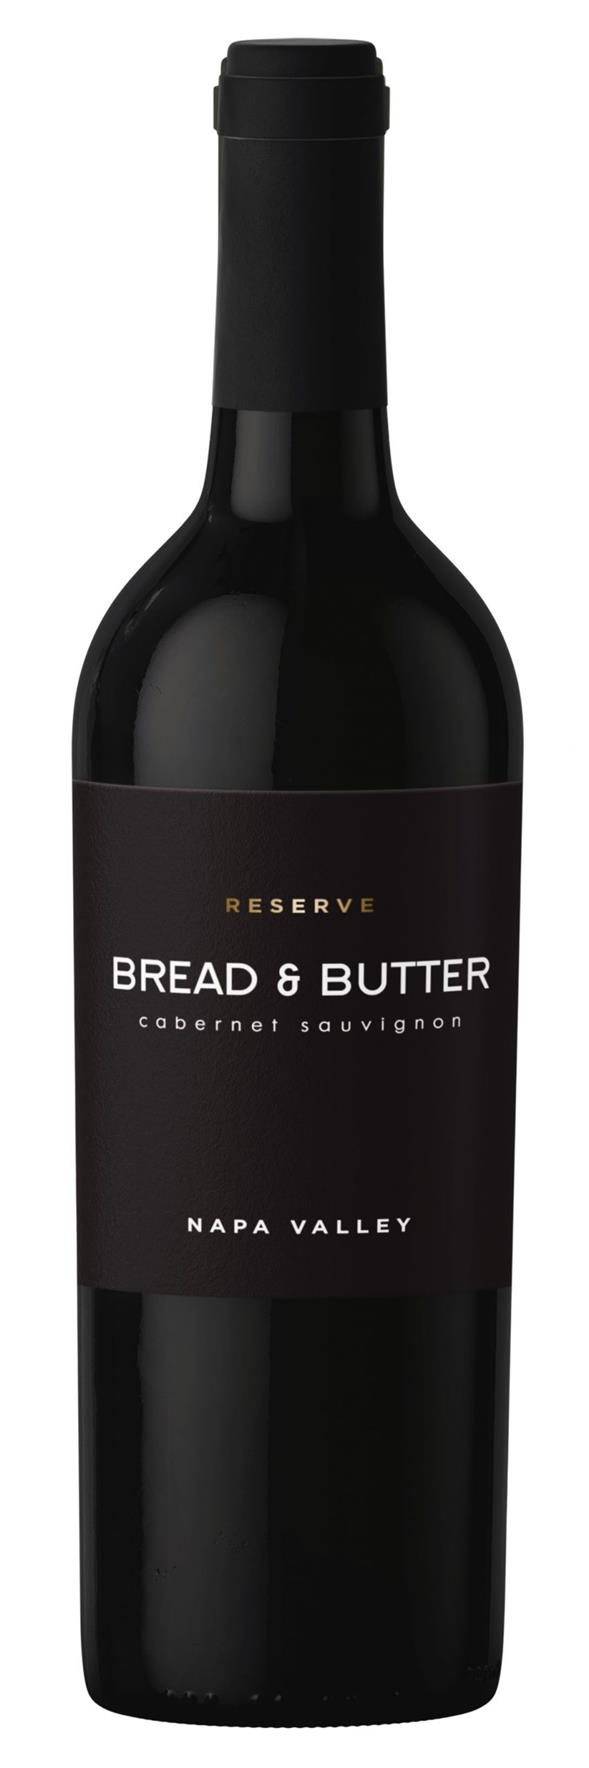 Bread & Butter – Cabernet Sauvignon Reserve 2019